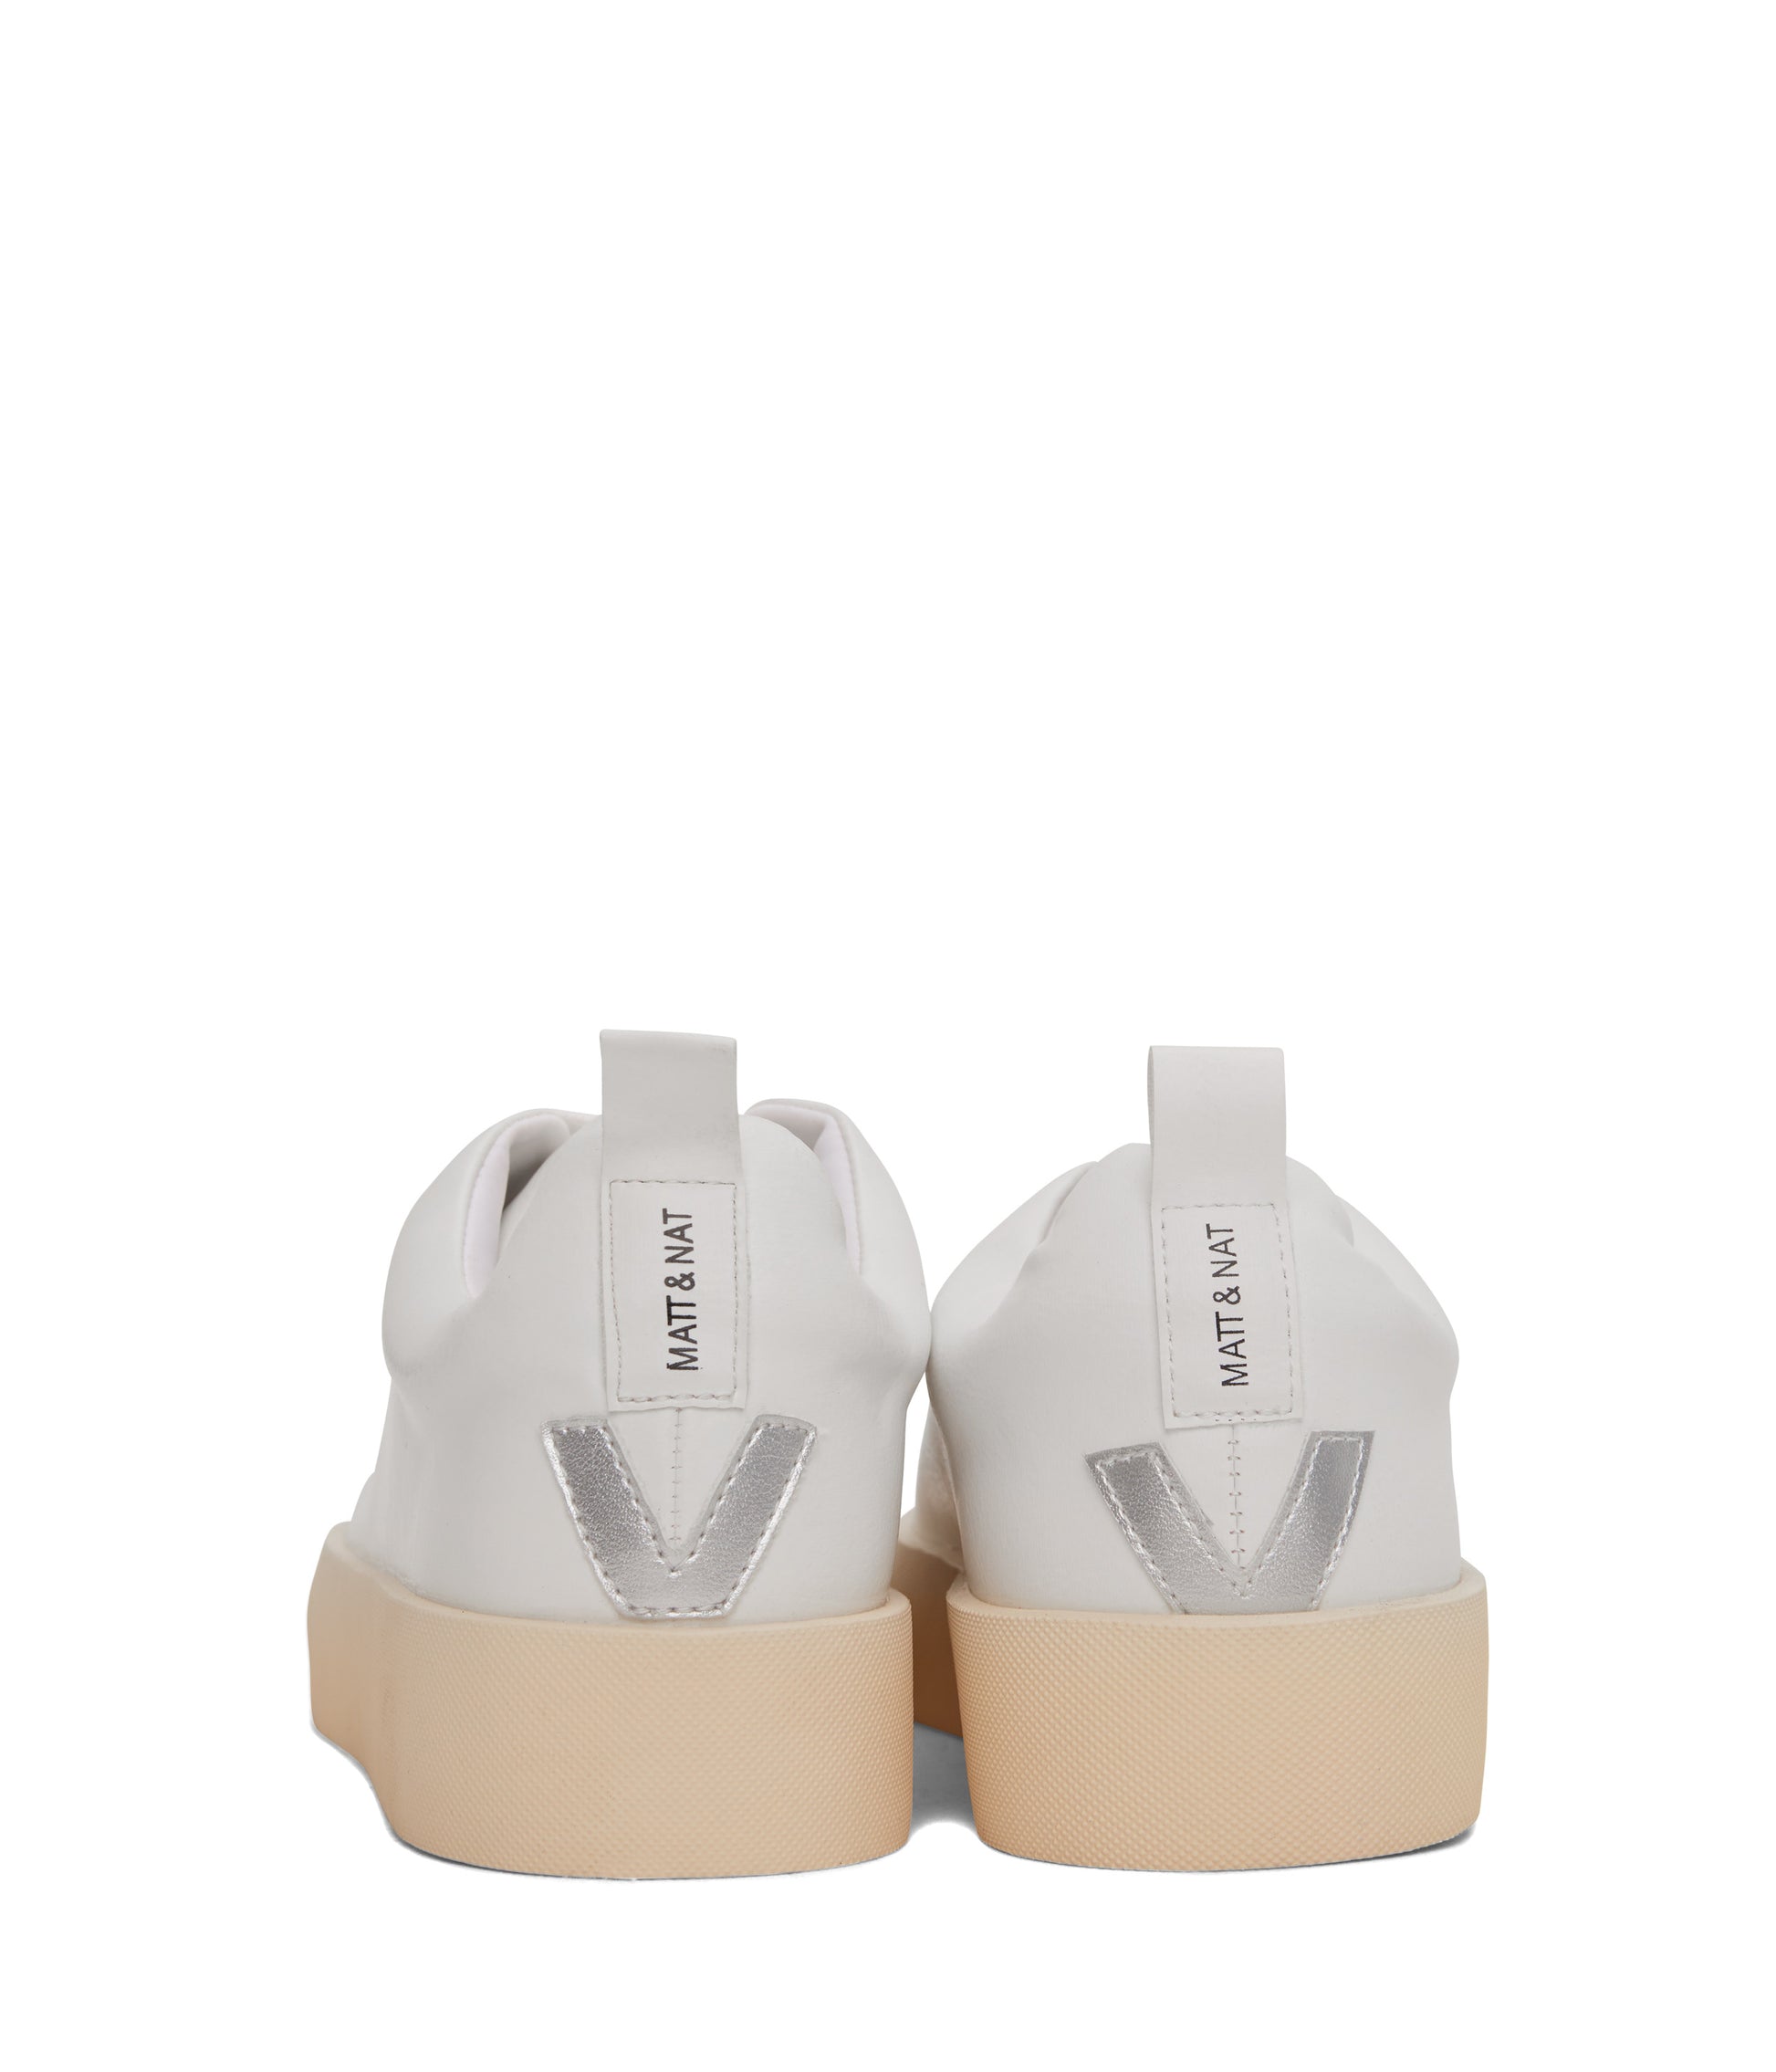 variant::blanc-argent -- marci shoe blanc-argent